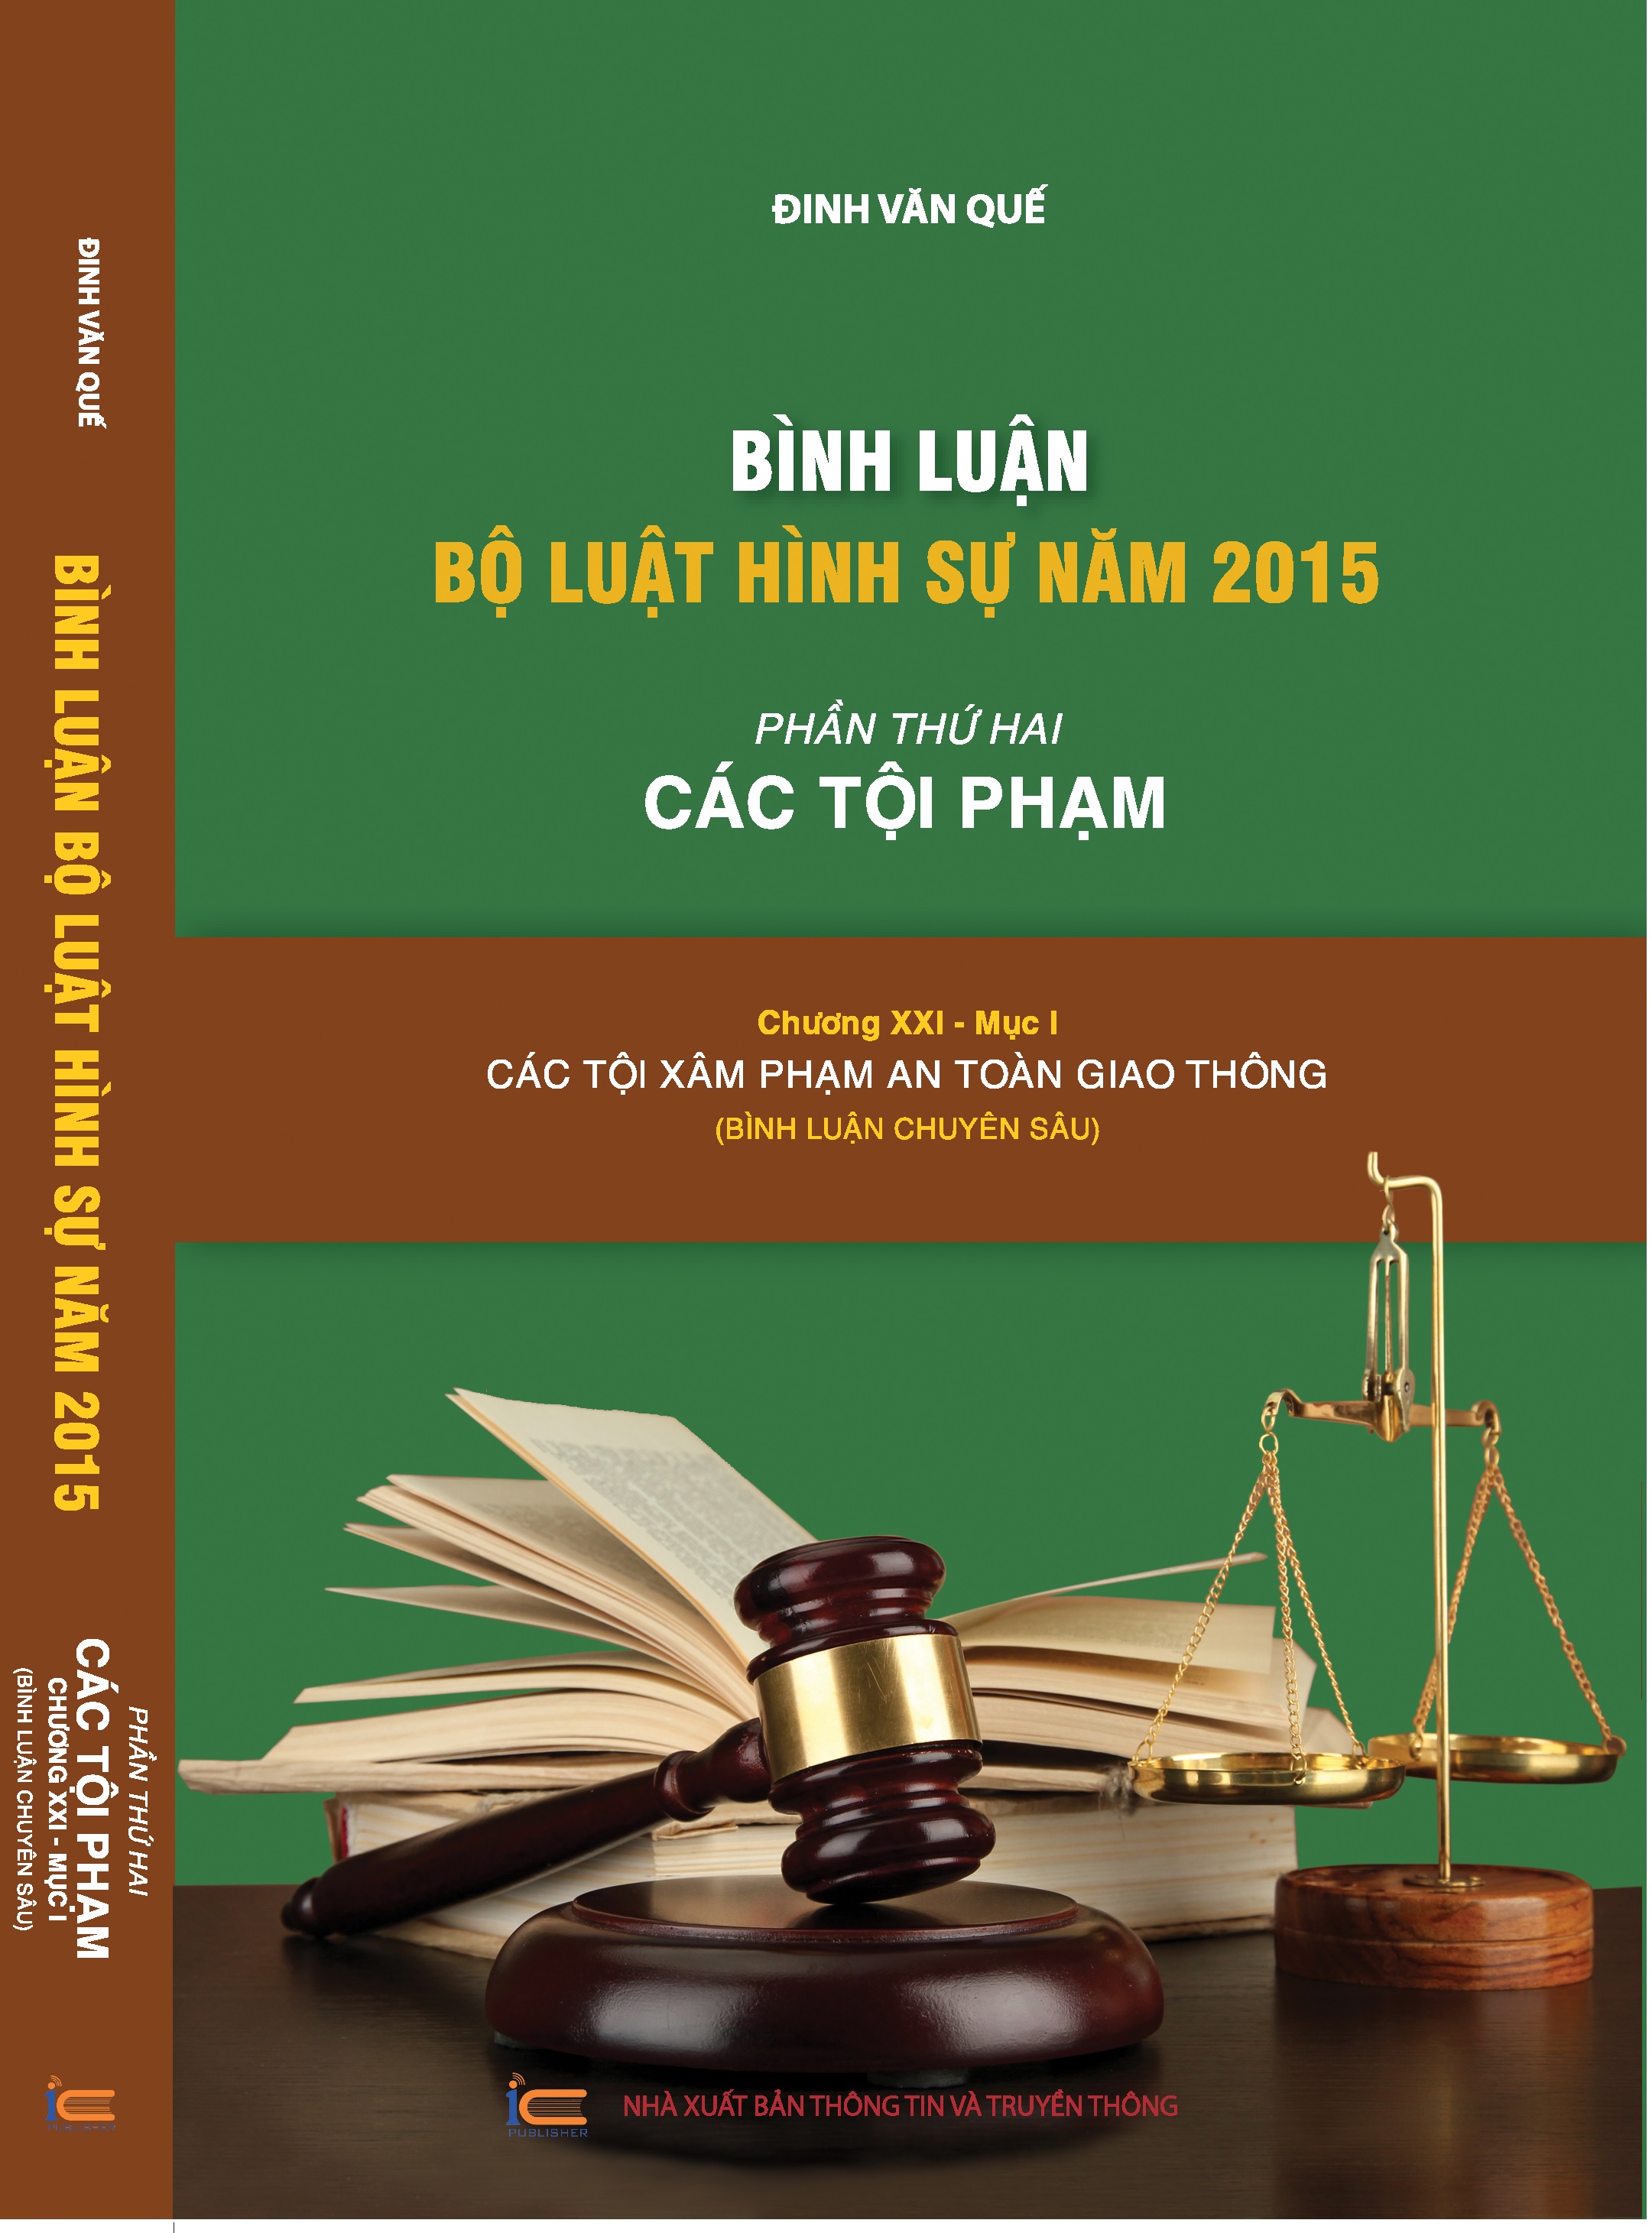 Combo bộ sách bình luận Bộ luật hình sự 2015 của tác giả Đinh Văn Quế (Bộ 8 cuốn)